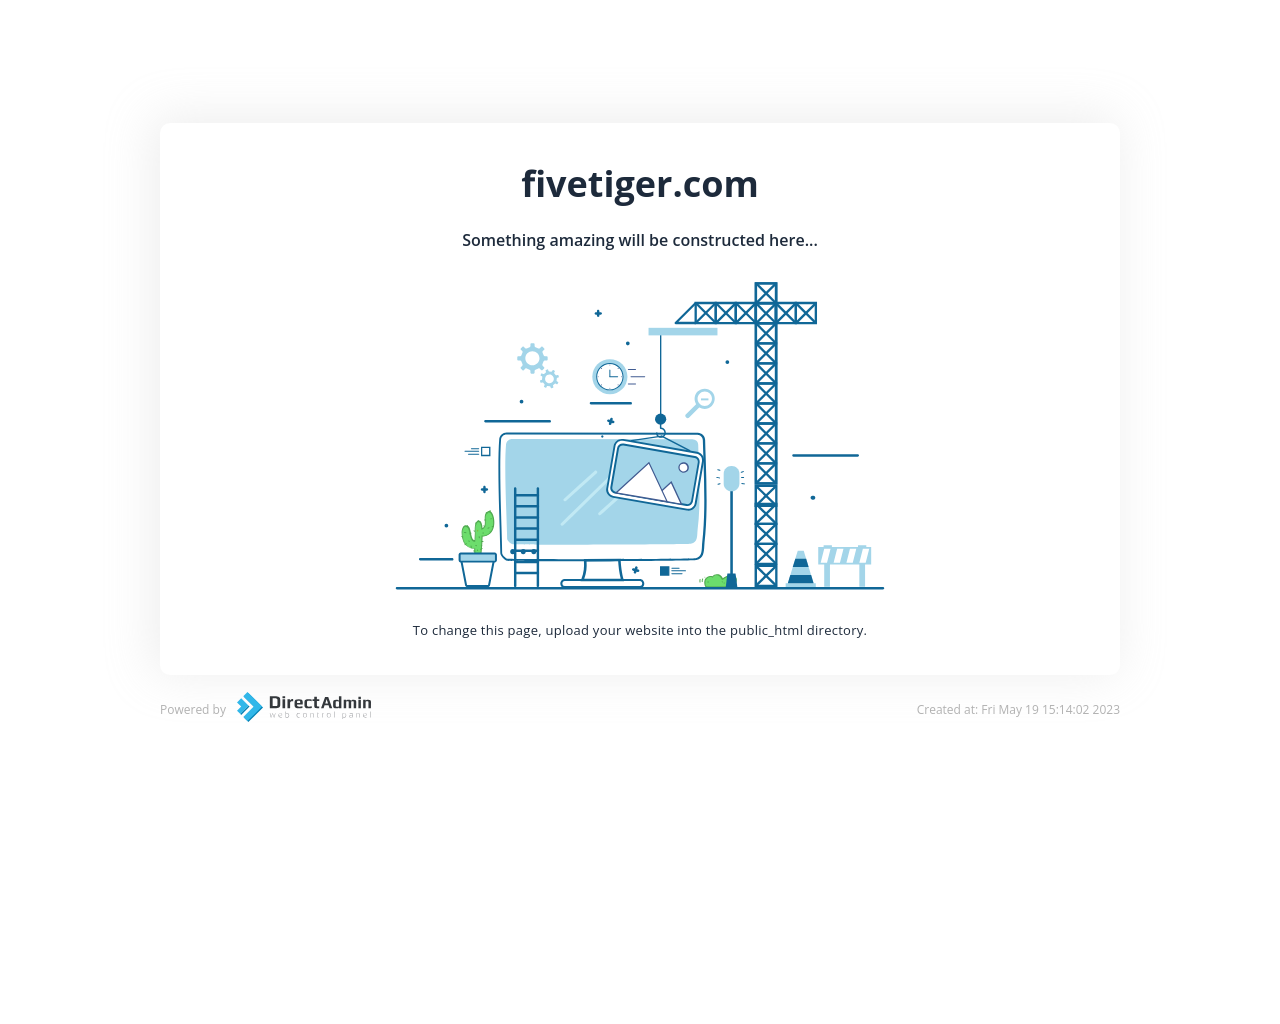 fivetiger.com